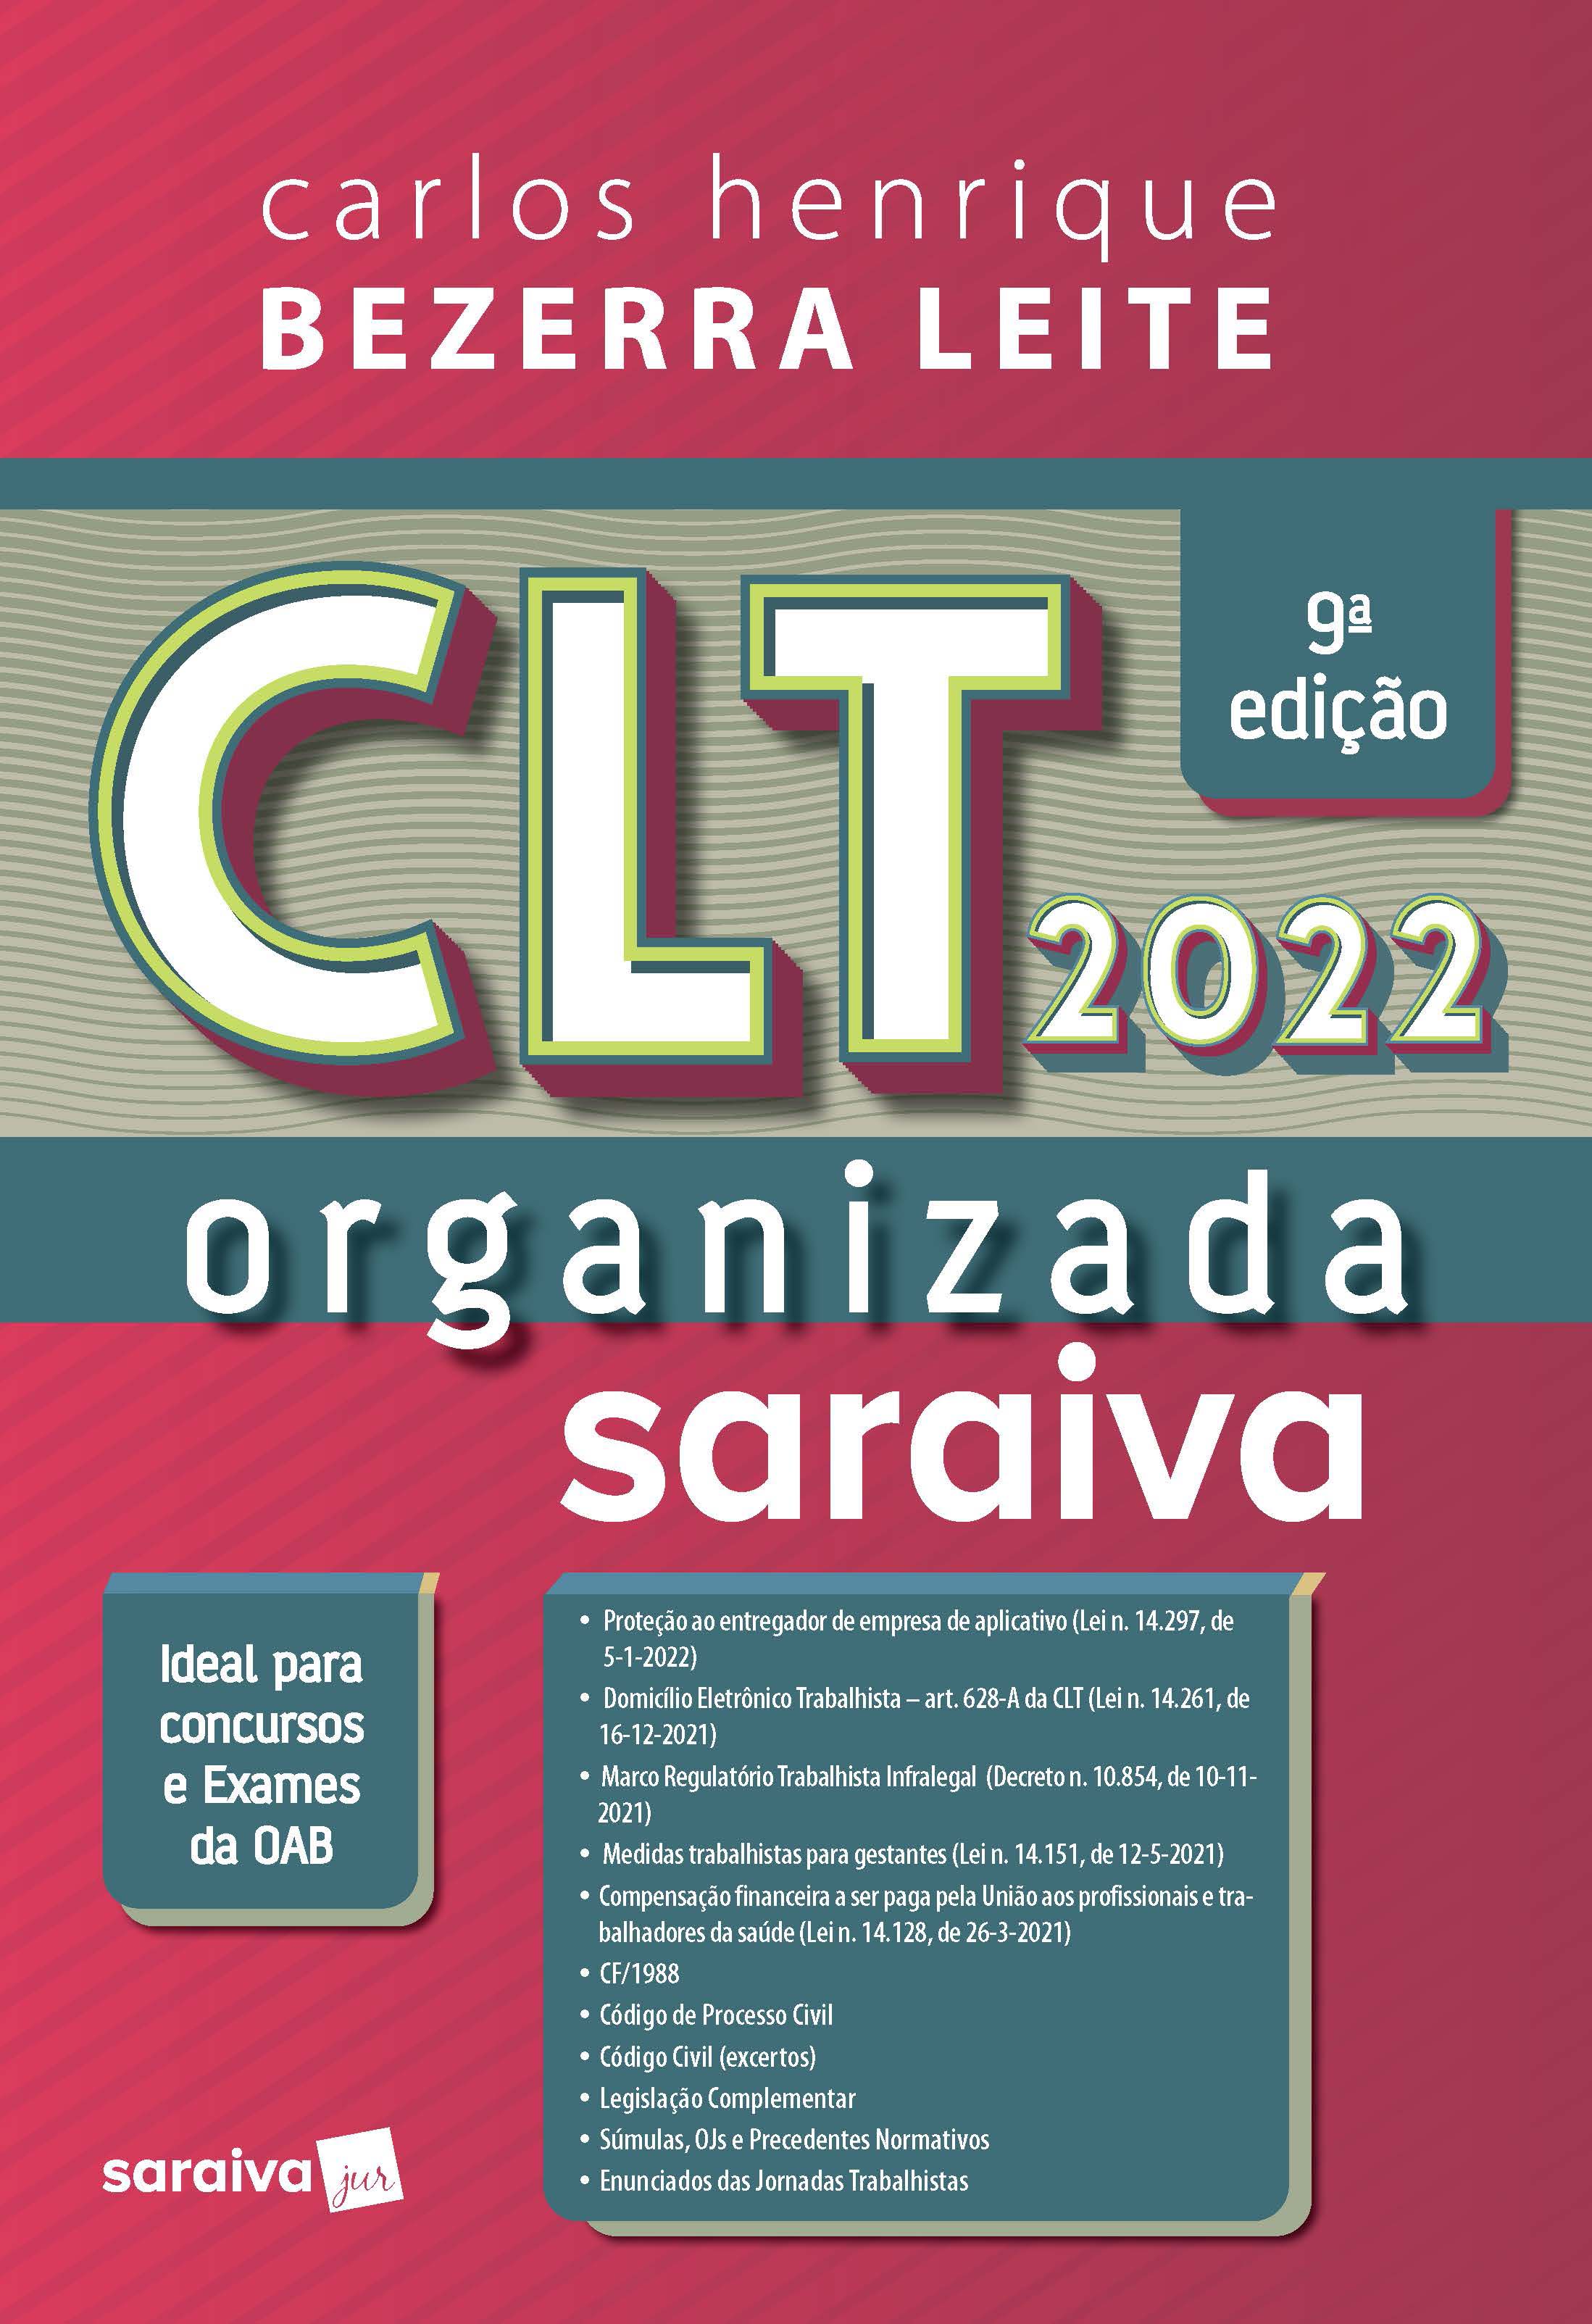 Clt Organizada - 9ª Edição 2022